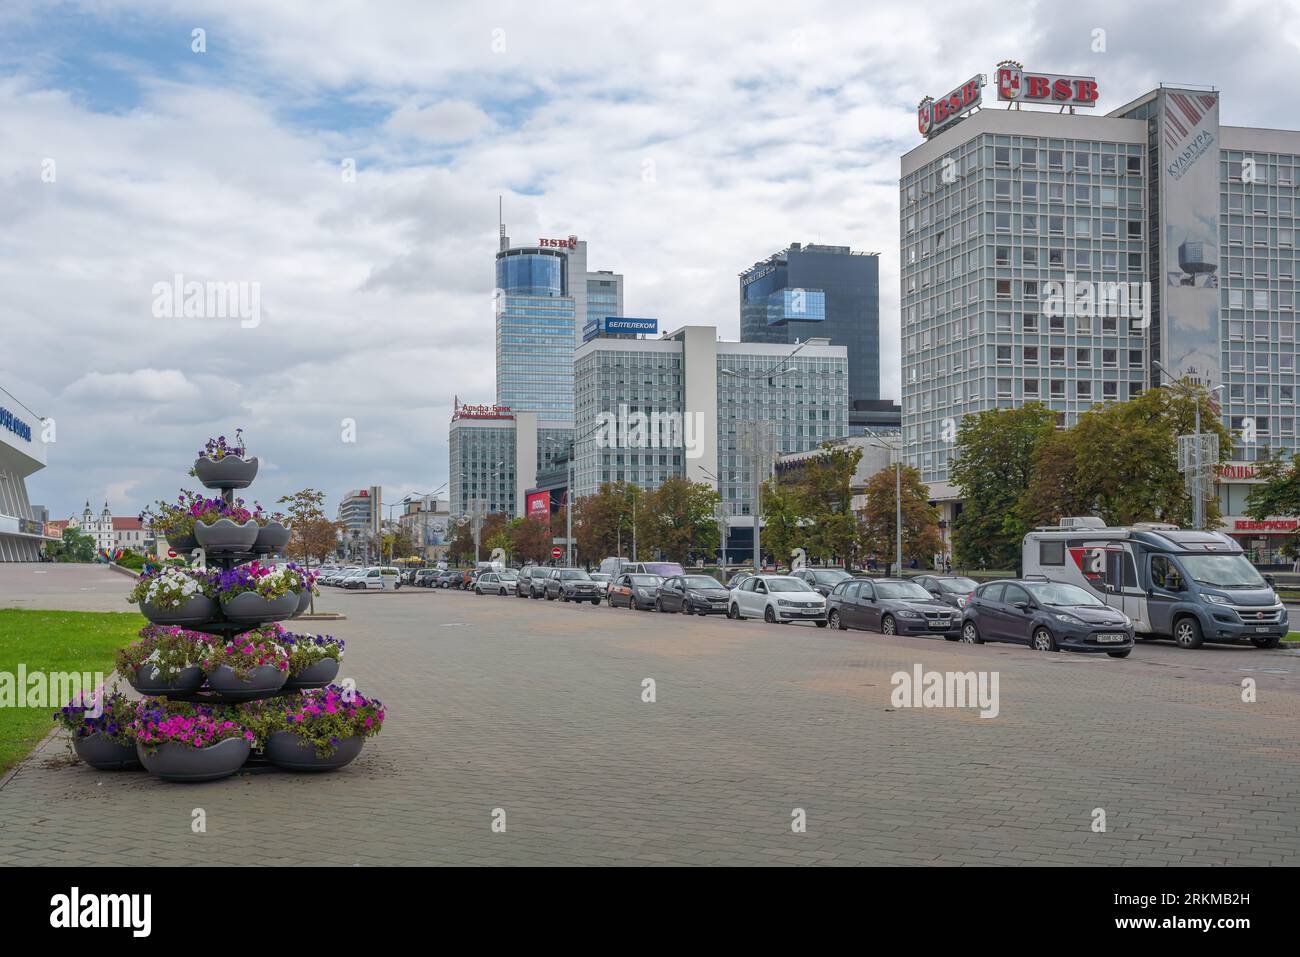 Pobeditelei Avenue with Minsk Financial District Modern Buildings - Minsk, Belarus Stock Photo